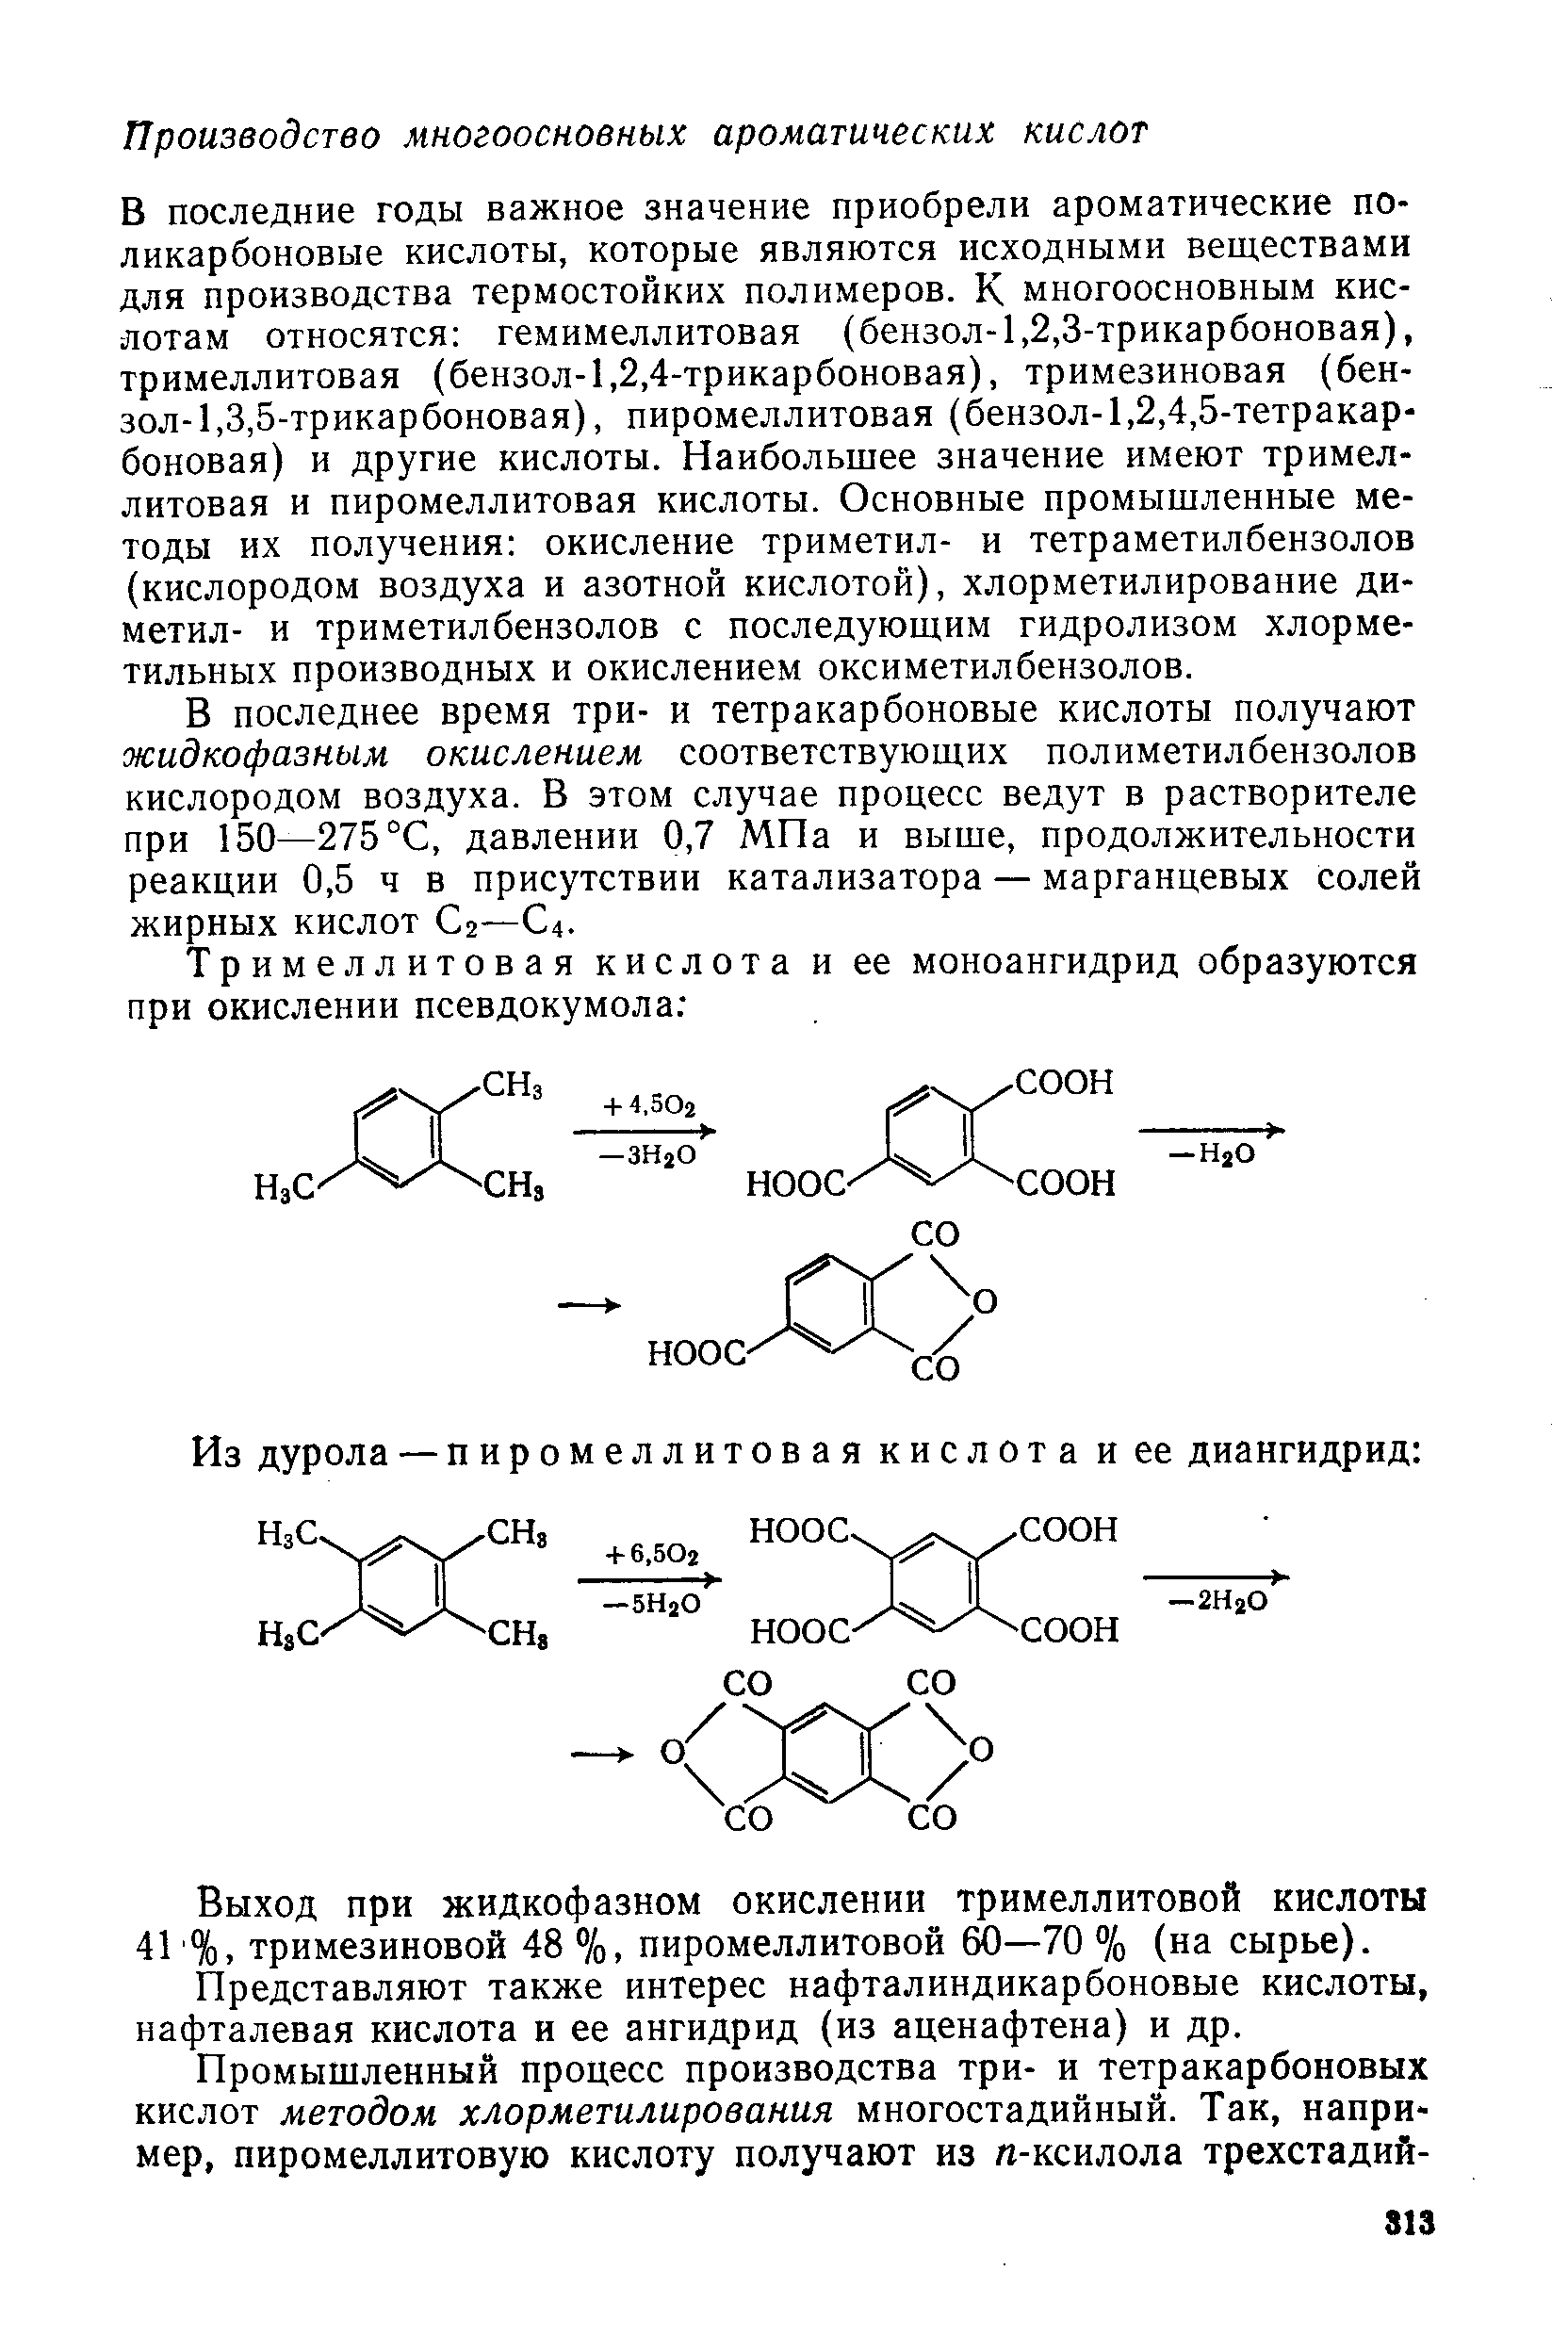 В последние годы важное значение приобрели ароматические по-ликарбоновые кислоты, которые являются исходными веществами для производства термостойких полимеров. К многоосновным кислотам относятся гемимеллитовая (бензол-1,2,3-трикарбоновая), тримеллитовая (бензол-1,2,4-трикарбоновая), тримезиновая (бензол-1,3,5-трикарбоновая), пиромеллитовая (бензол-1,2,4,5-тетракарбоновая) и другие кислоты. Наибольшее значение имеют тримеллитовая и пиромеллитовая кислоты. Основные промышленные методы их получения окисление триметил- и тетраметилбензолов (кислородом воздуха и азотной кислотой), хлорметилирование диметил- и триметилбензолов с последующим гидролизом хлорме-тильных производных и окислением оксиметилбензолов.